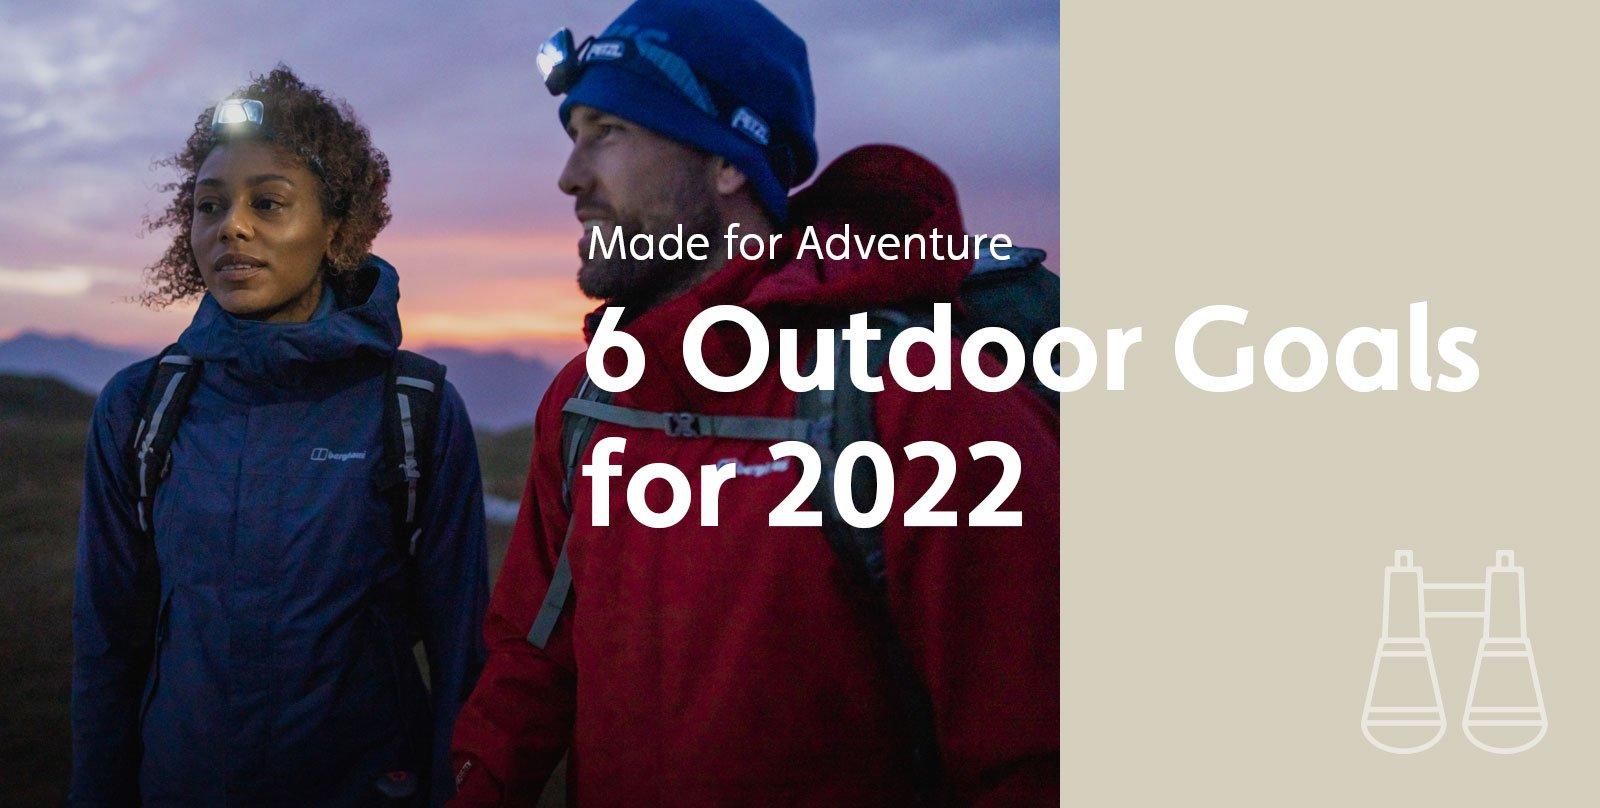 6 Outdoor Goals for 2022